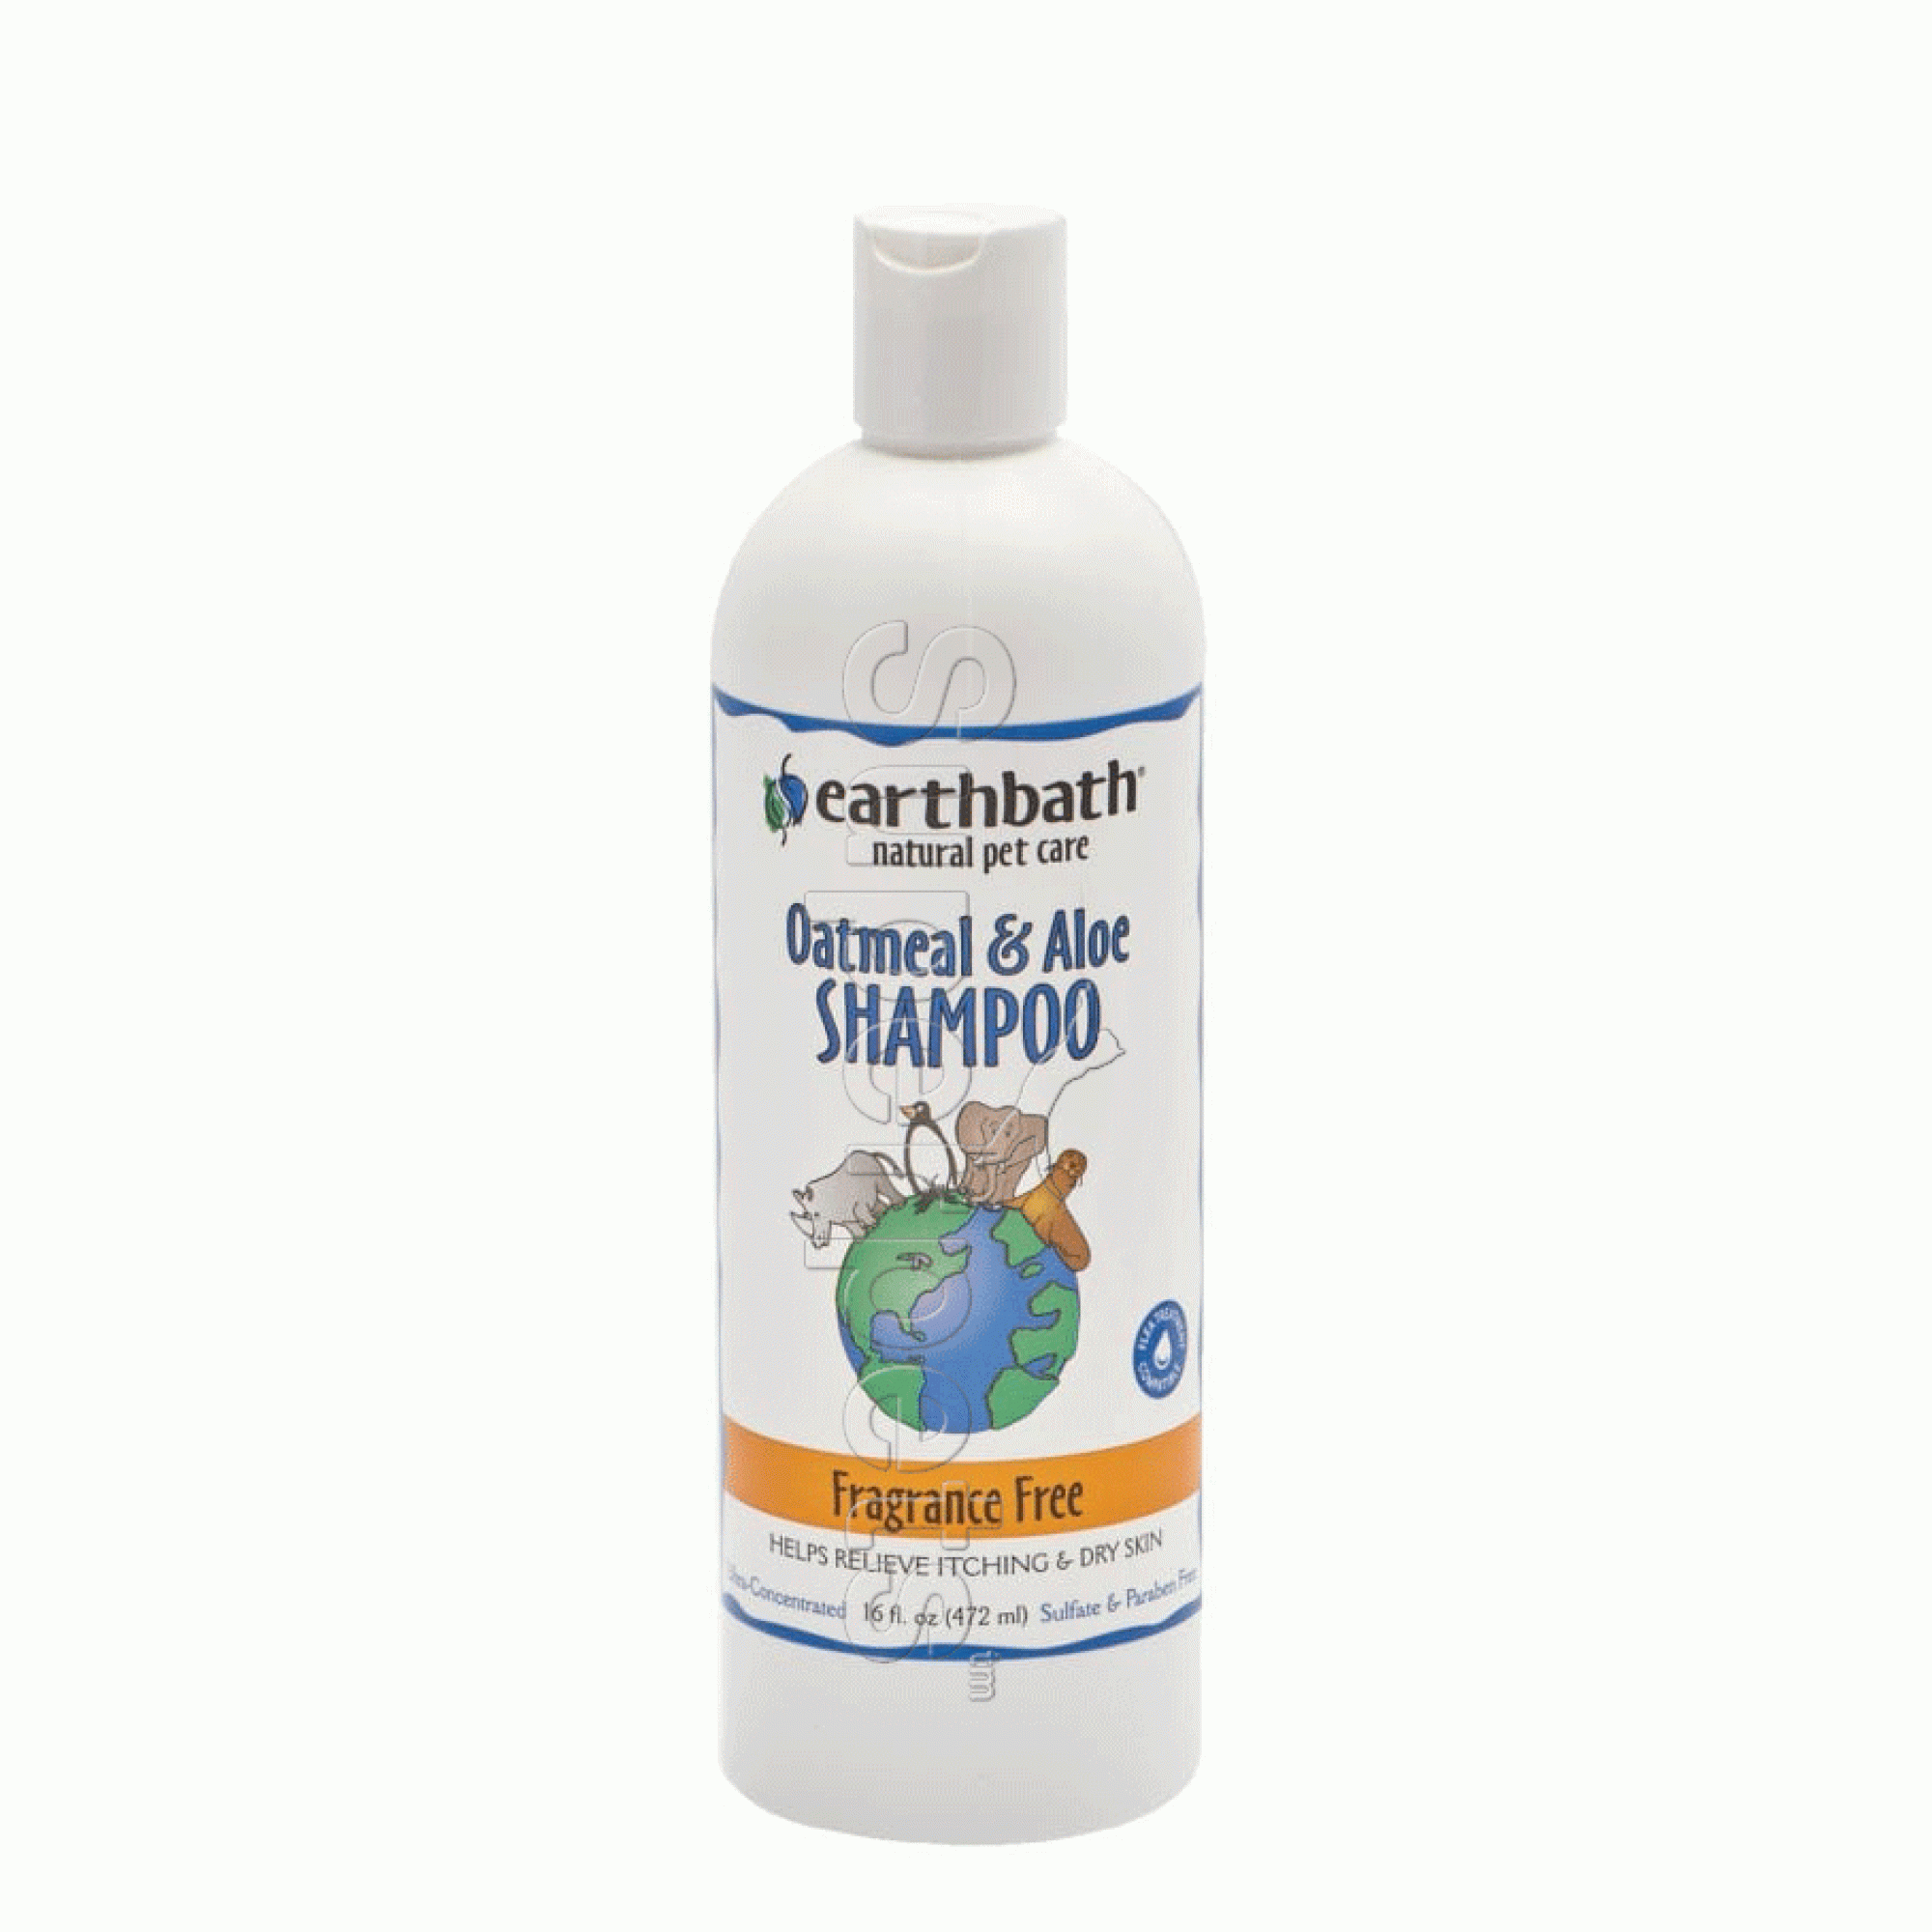 Earthbath EB013 Oatmeal & Aloe Shampoo Fragrance Free 16oz (472ml)